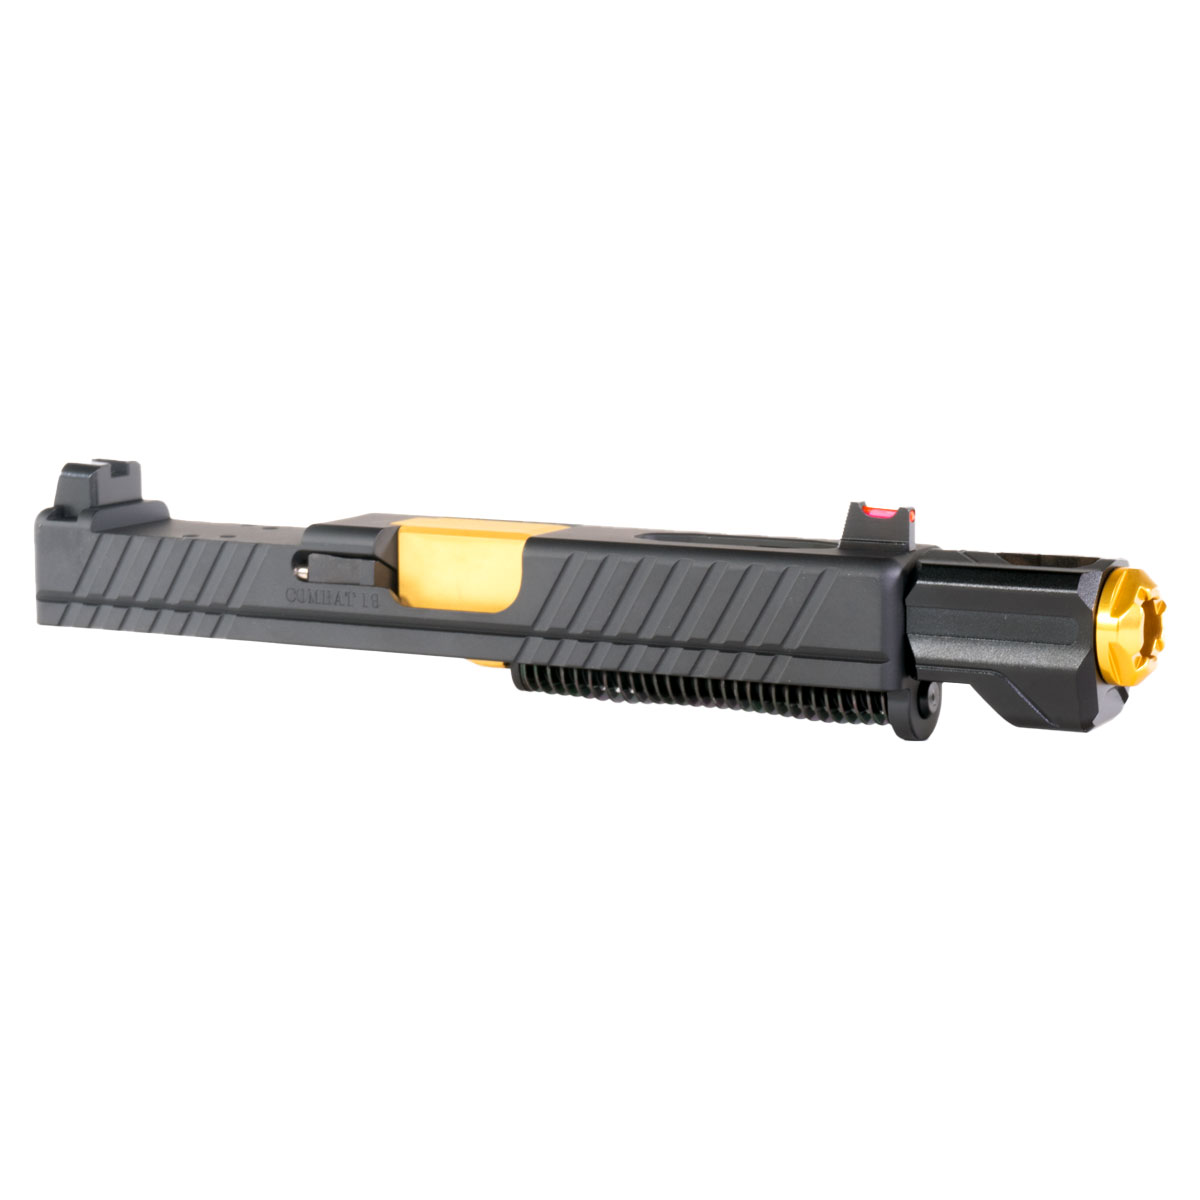 DDS 'Bbang w/ Tyrant Designs Compensator' 9mm Complete Slide Kit - Glock 19 Gen 1-3 Compatible